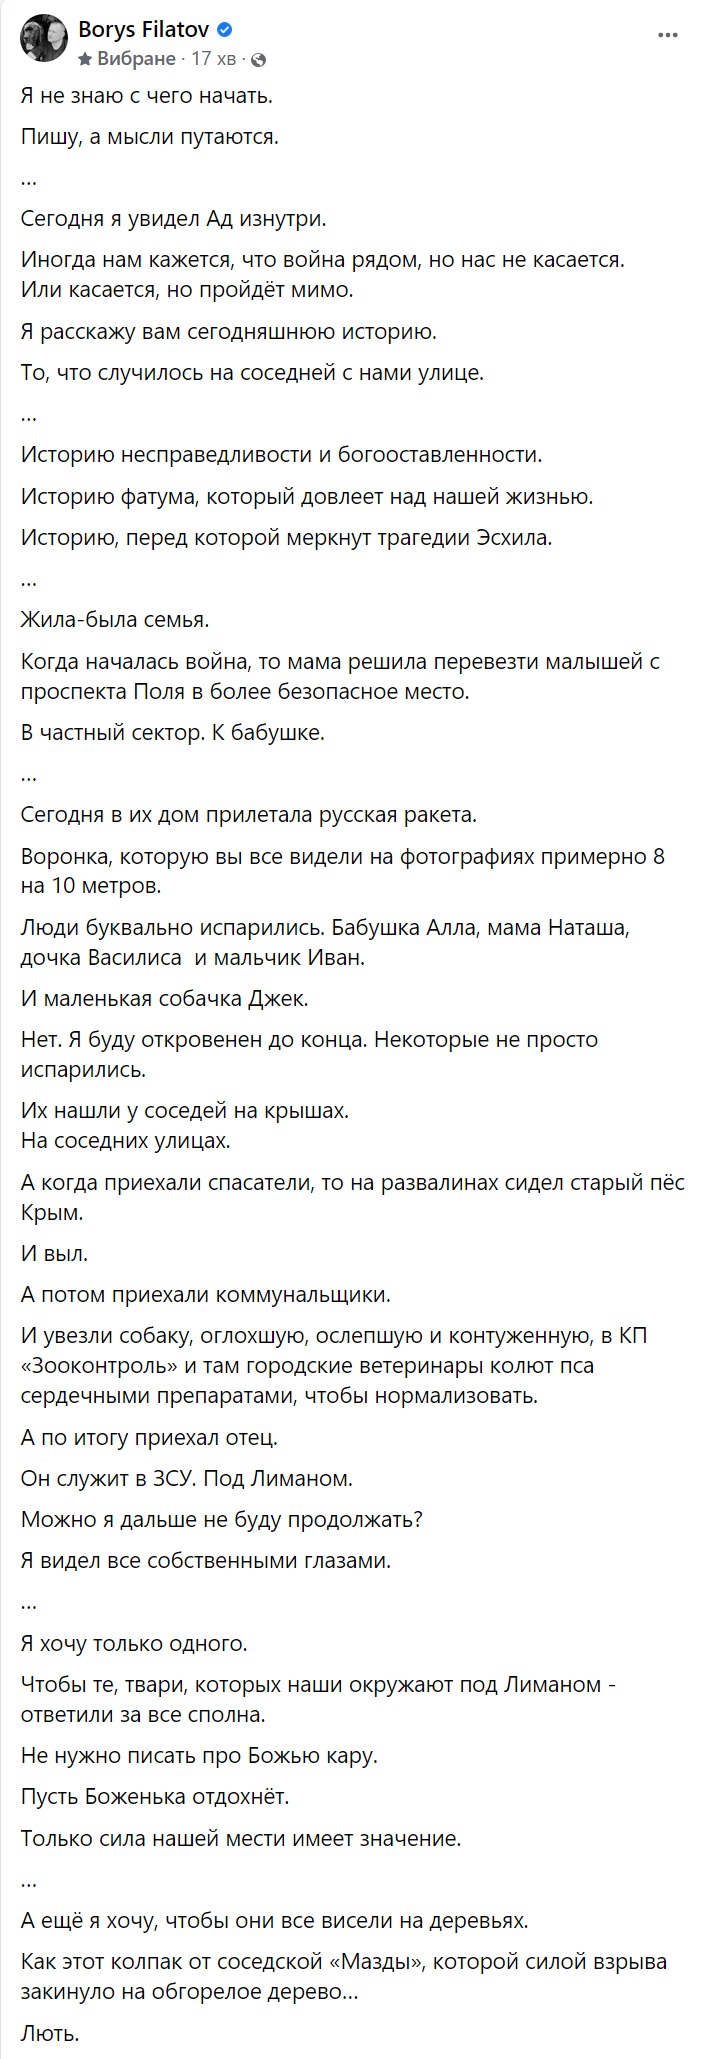 Борис Філатов розповів про родину, яка загинула внаслідок ракетної атаки - || фото: facebook.com/profile.php?id=100002157183088